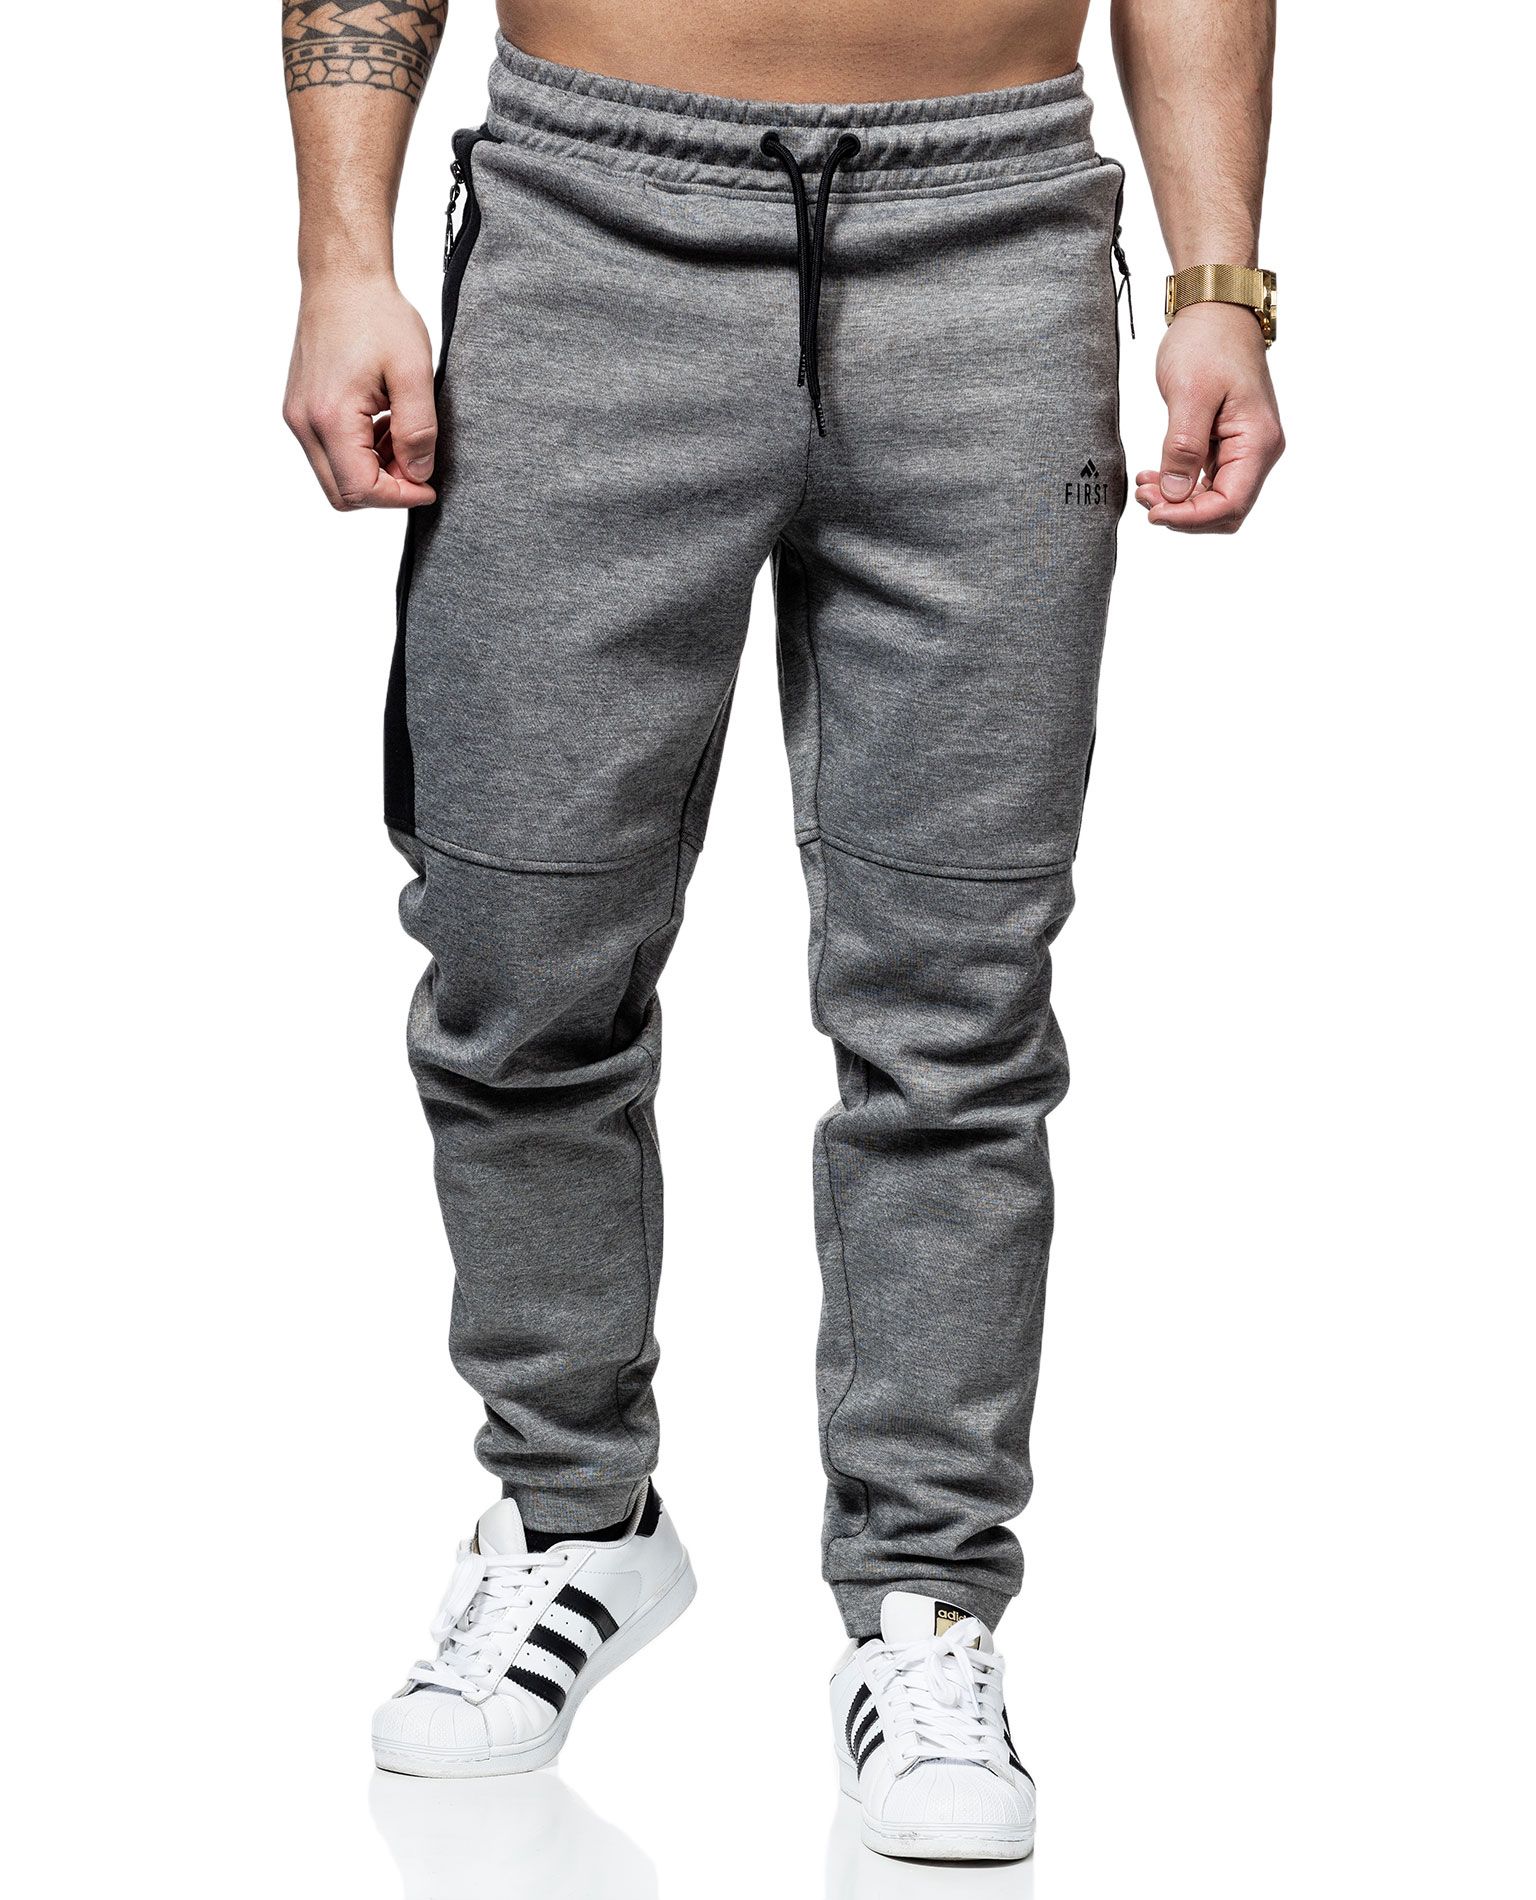 Jack Scuba Pants FIRST - 5673 - Sportswear - Jerone.com